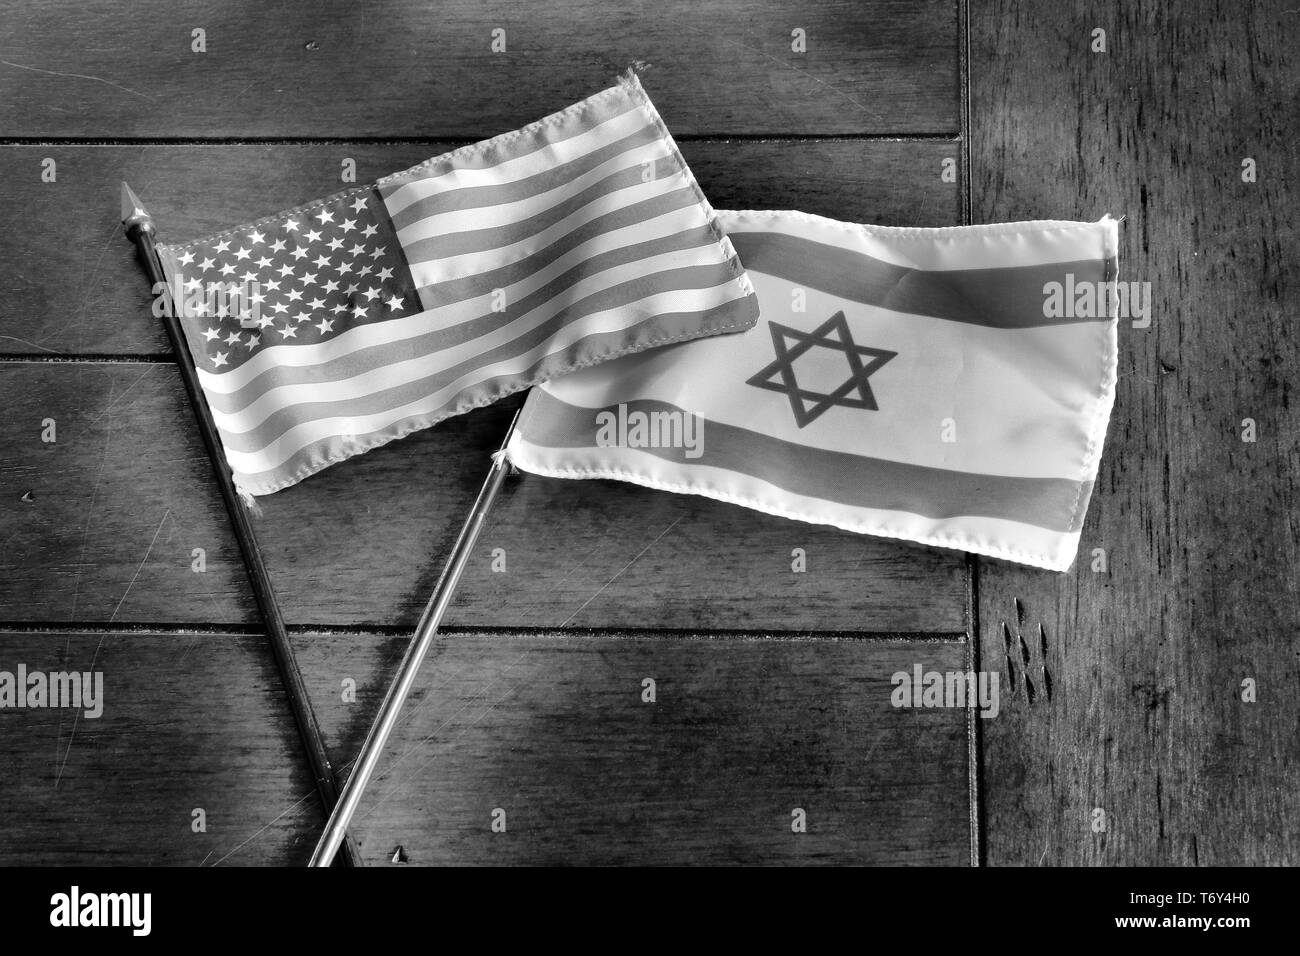 Bandiere di Israele e degli Stati Uniti su una superficie in legno; American-Israeli relazioni; monocromatico; si è deteriorata la decolorazione. Foto Stock